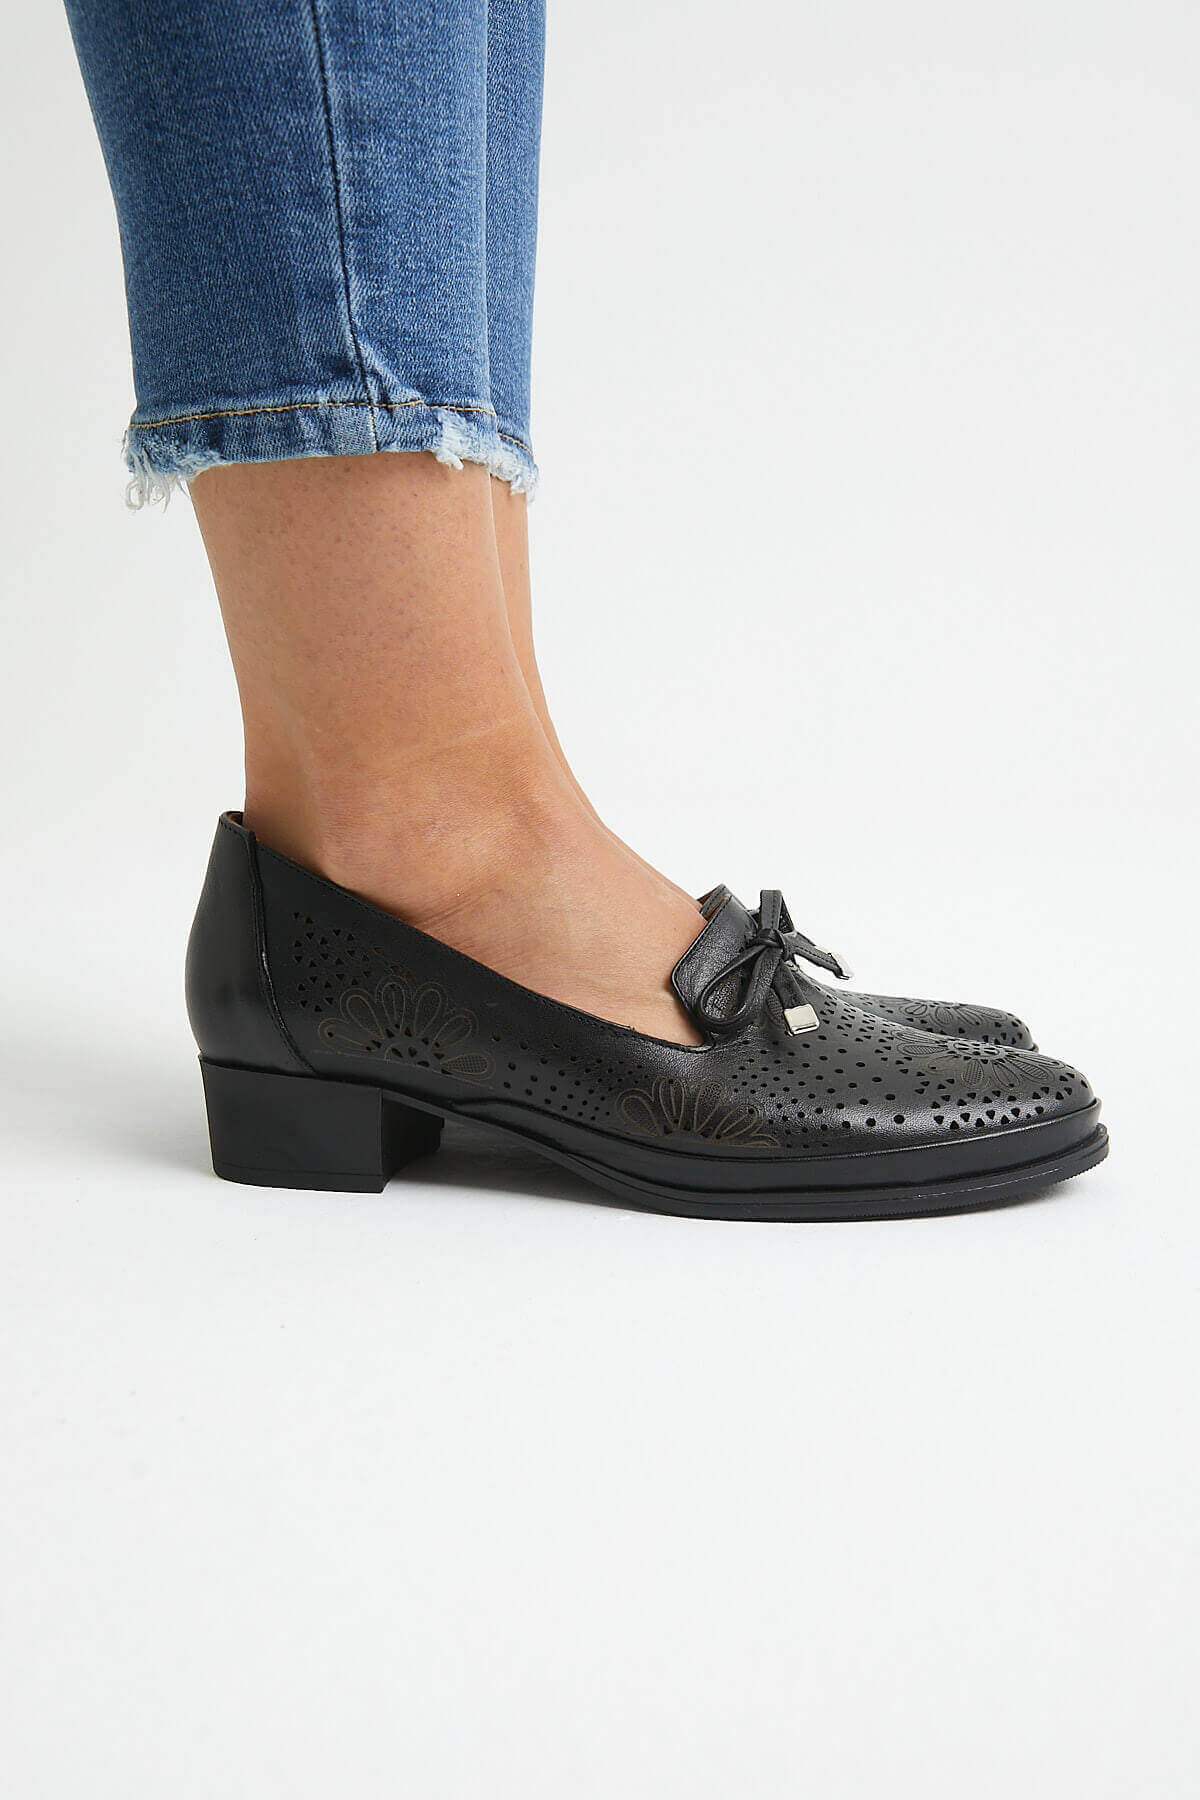 Kadın Topuklu Deri Ayakkabı Siyah 1709214Y